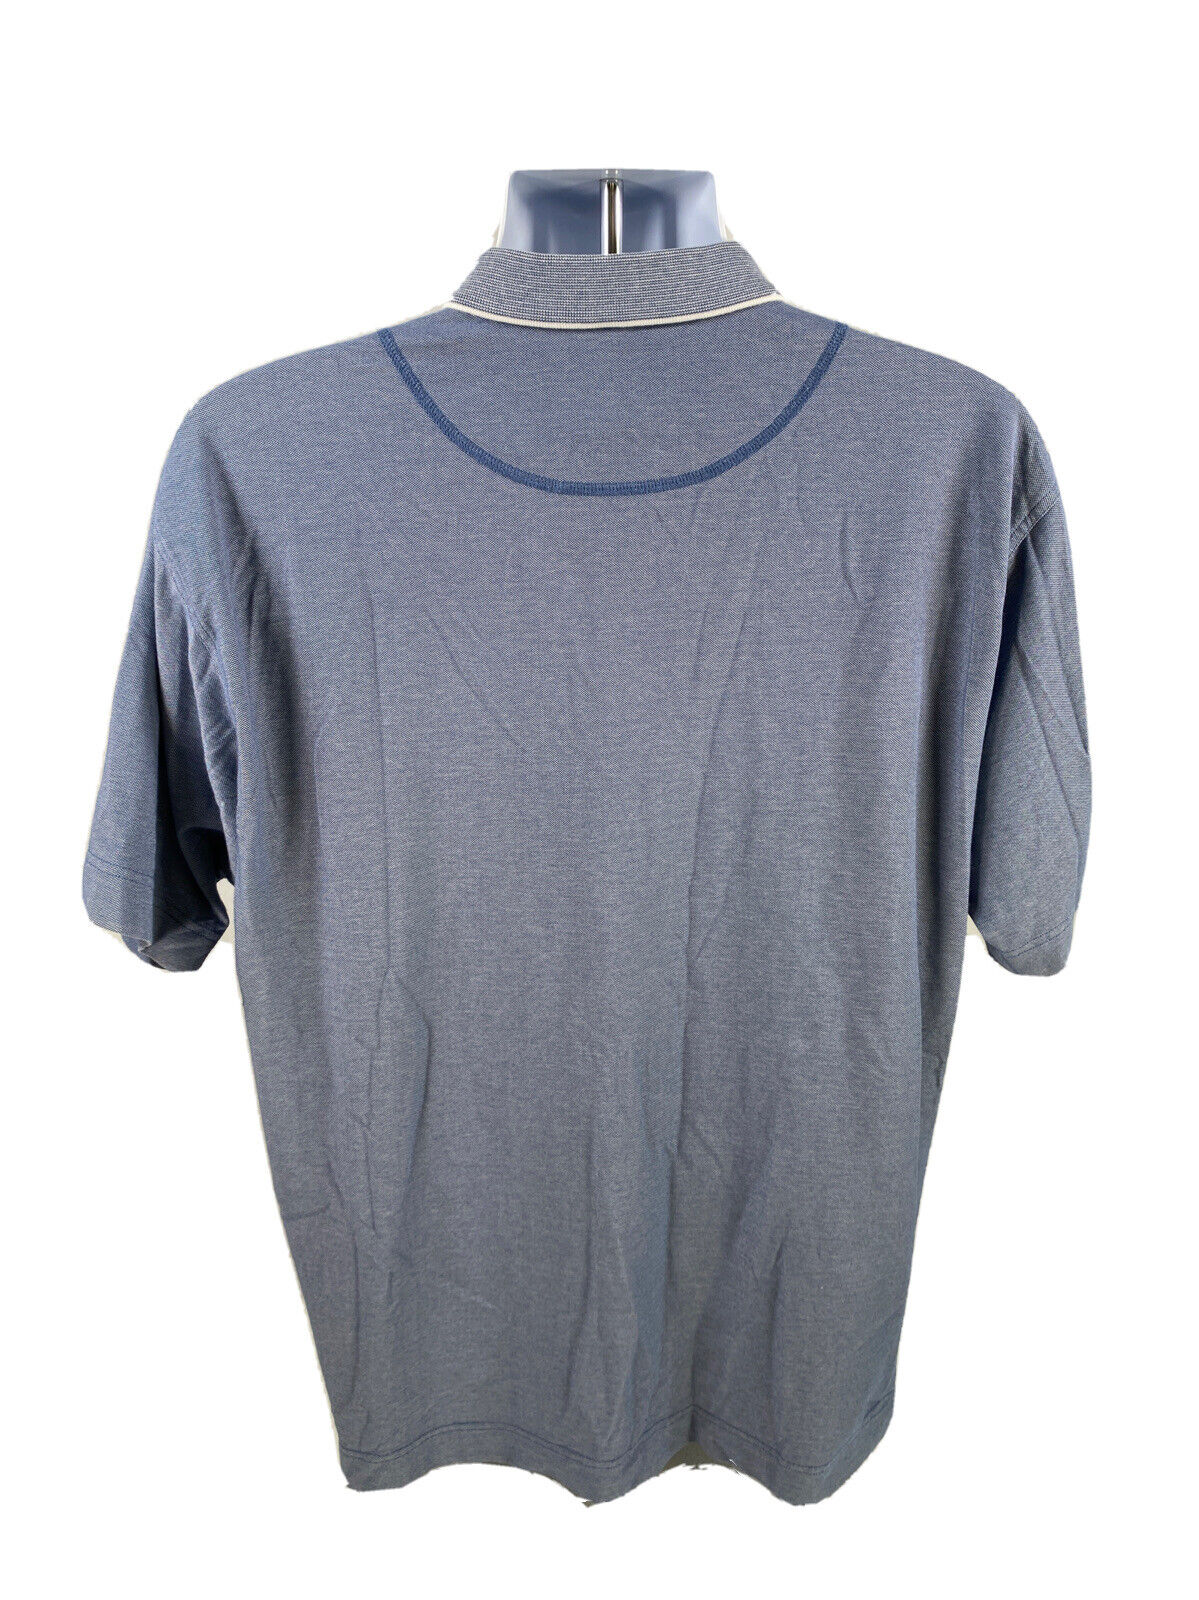 Cutter & Buck Mens Blue Quick Dry Short Sleeve Cotton Golf Polo Shirt - L